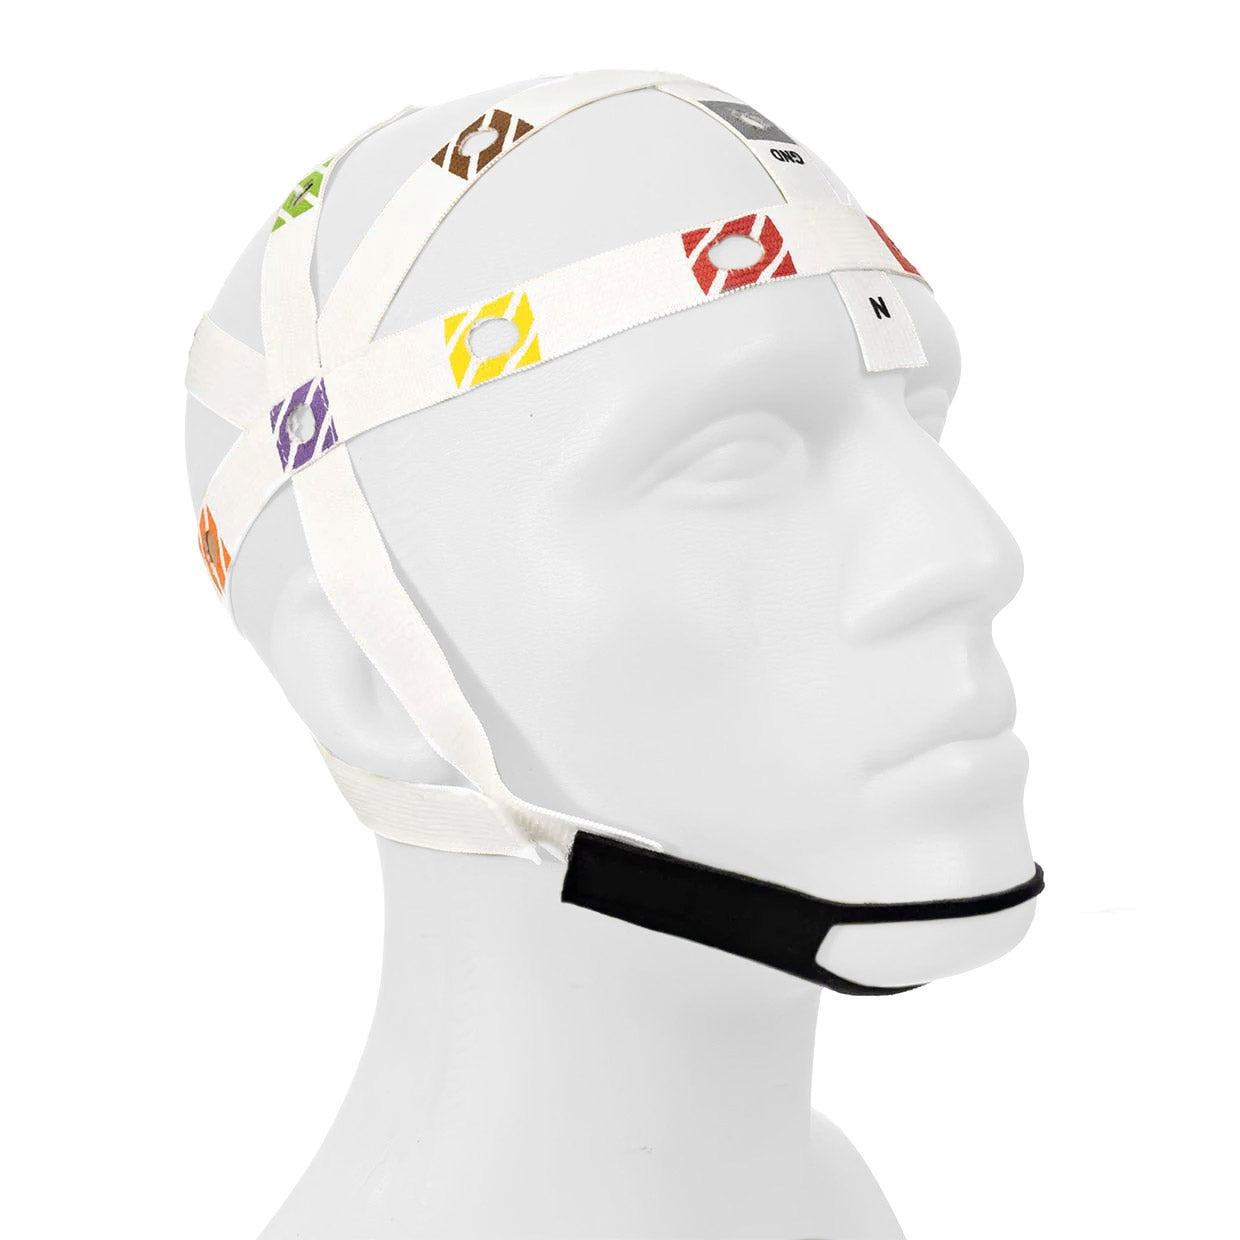 BraiNet 10/20 Electrode Placement Cap - Cap on mannequin head | Caputron